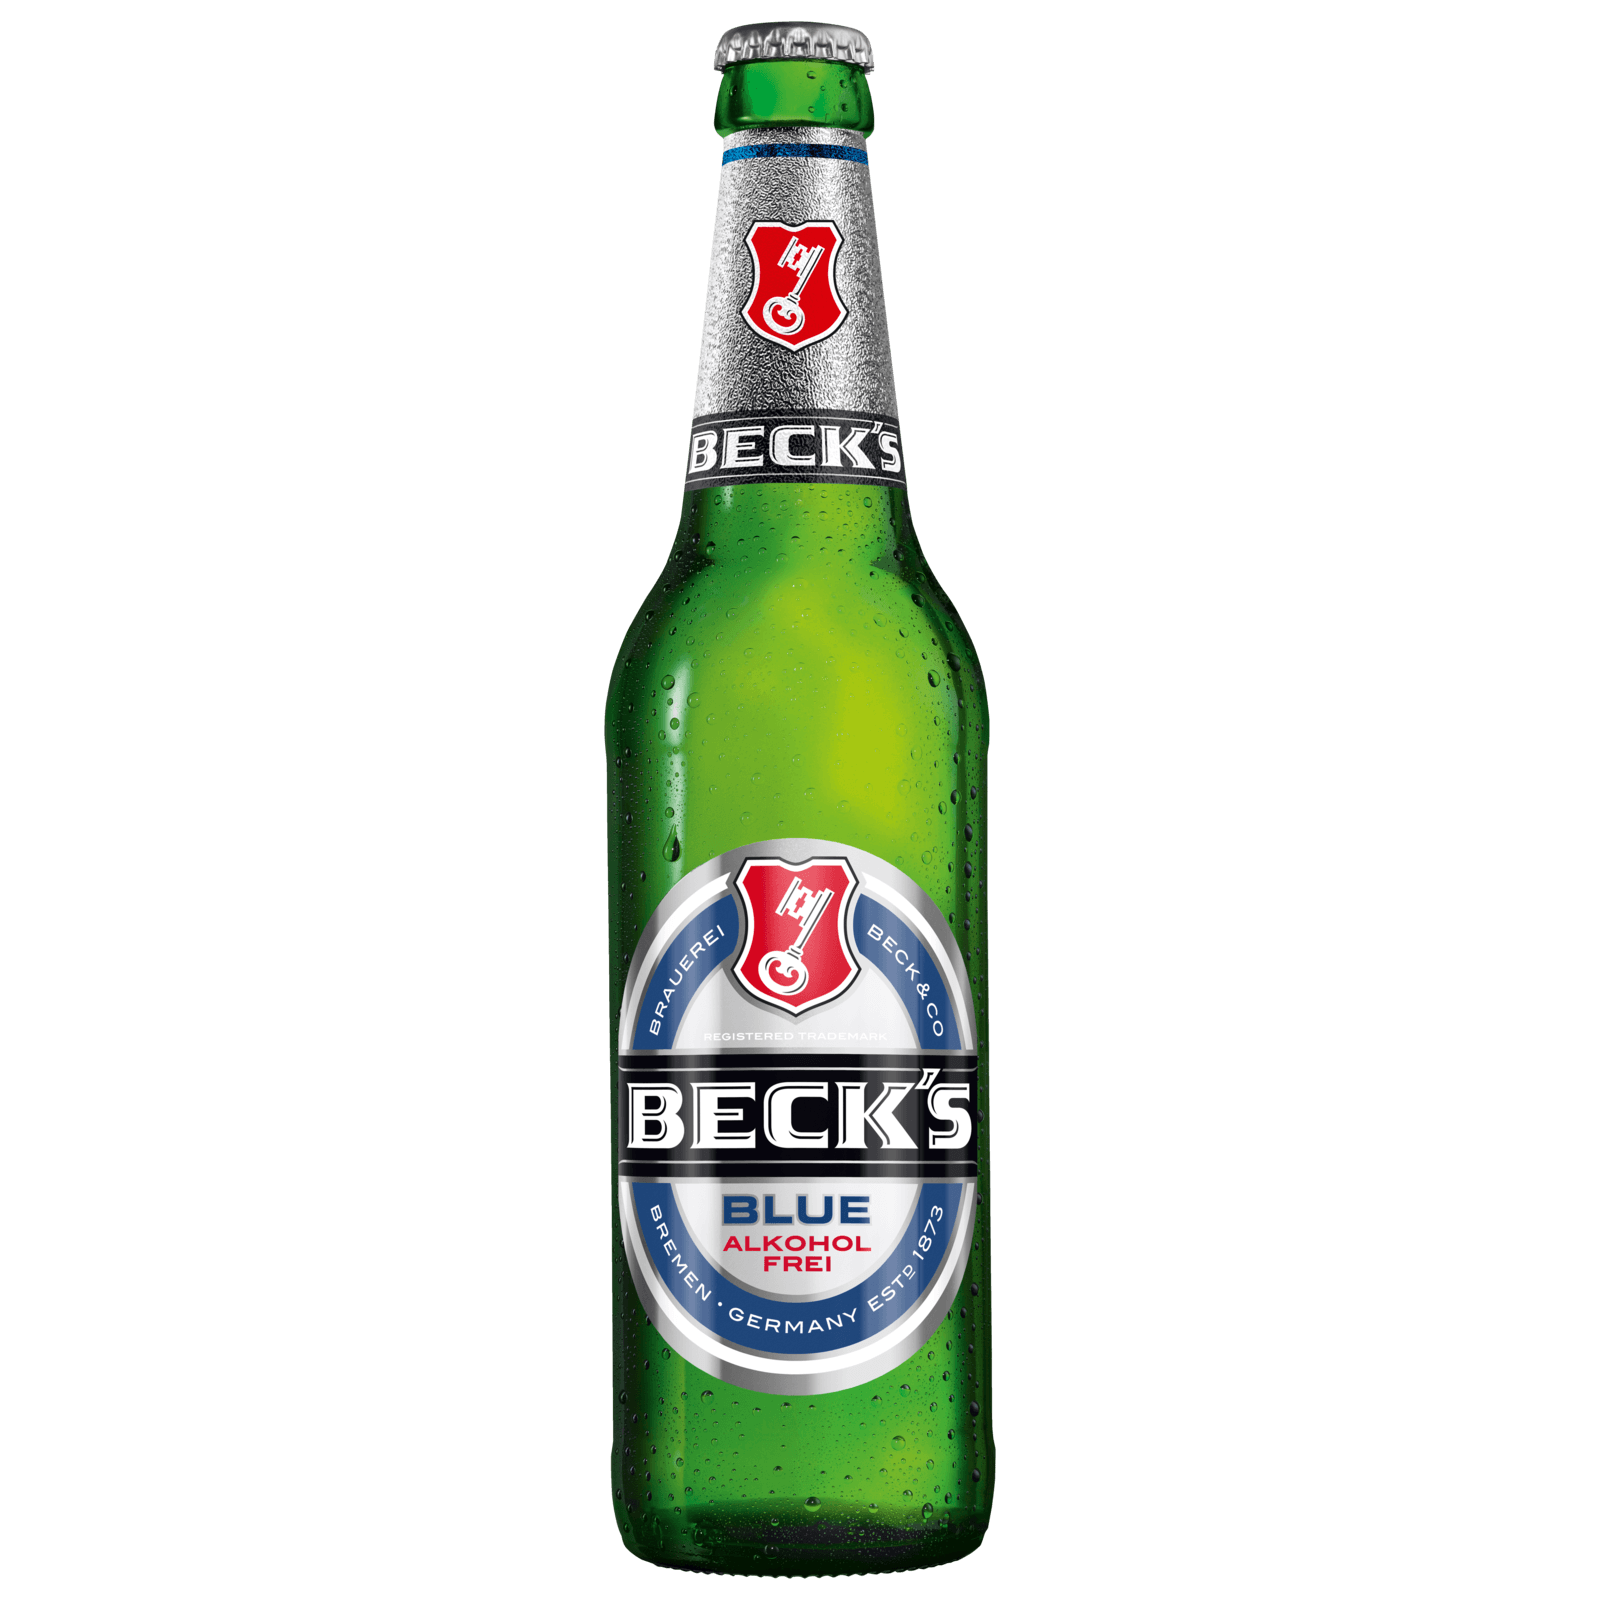 BECK'S Blue alkoholfrei